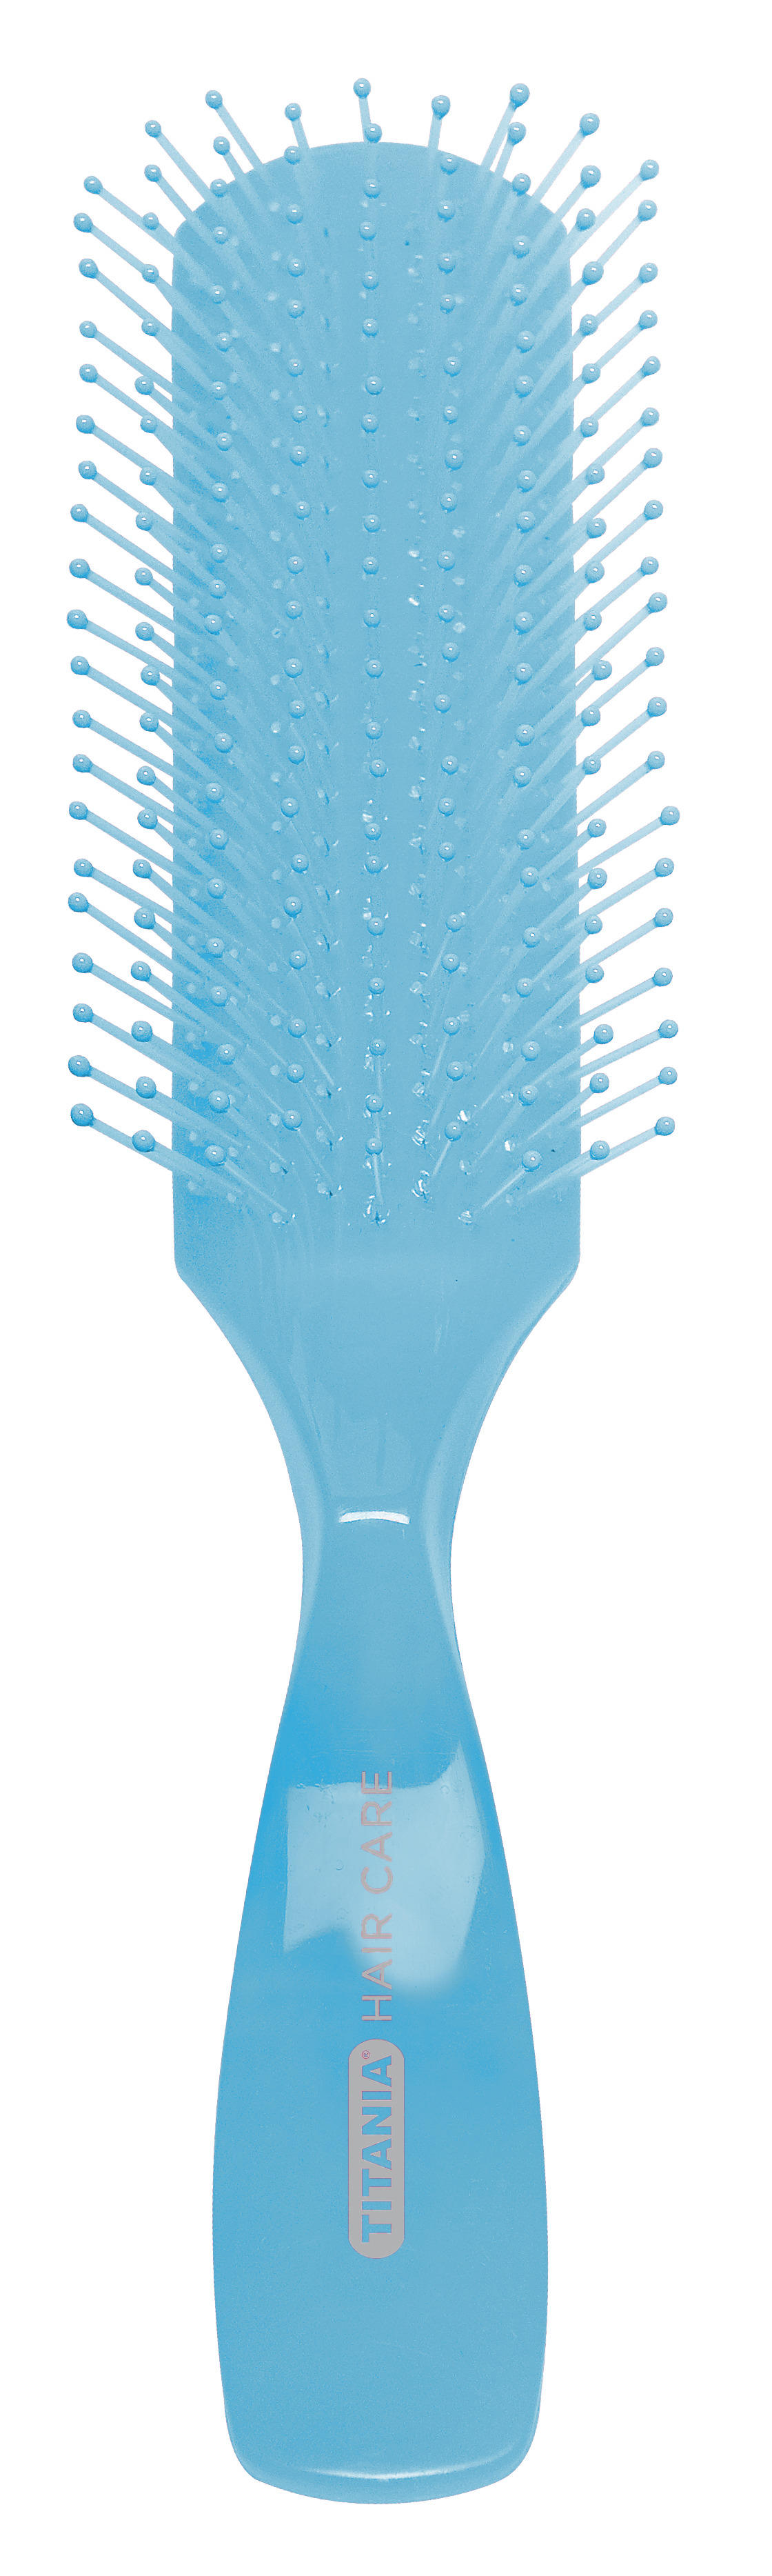 Щетка для волос Titania массажная, 9 рядов, синий (1830 син) - фото 1